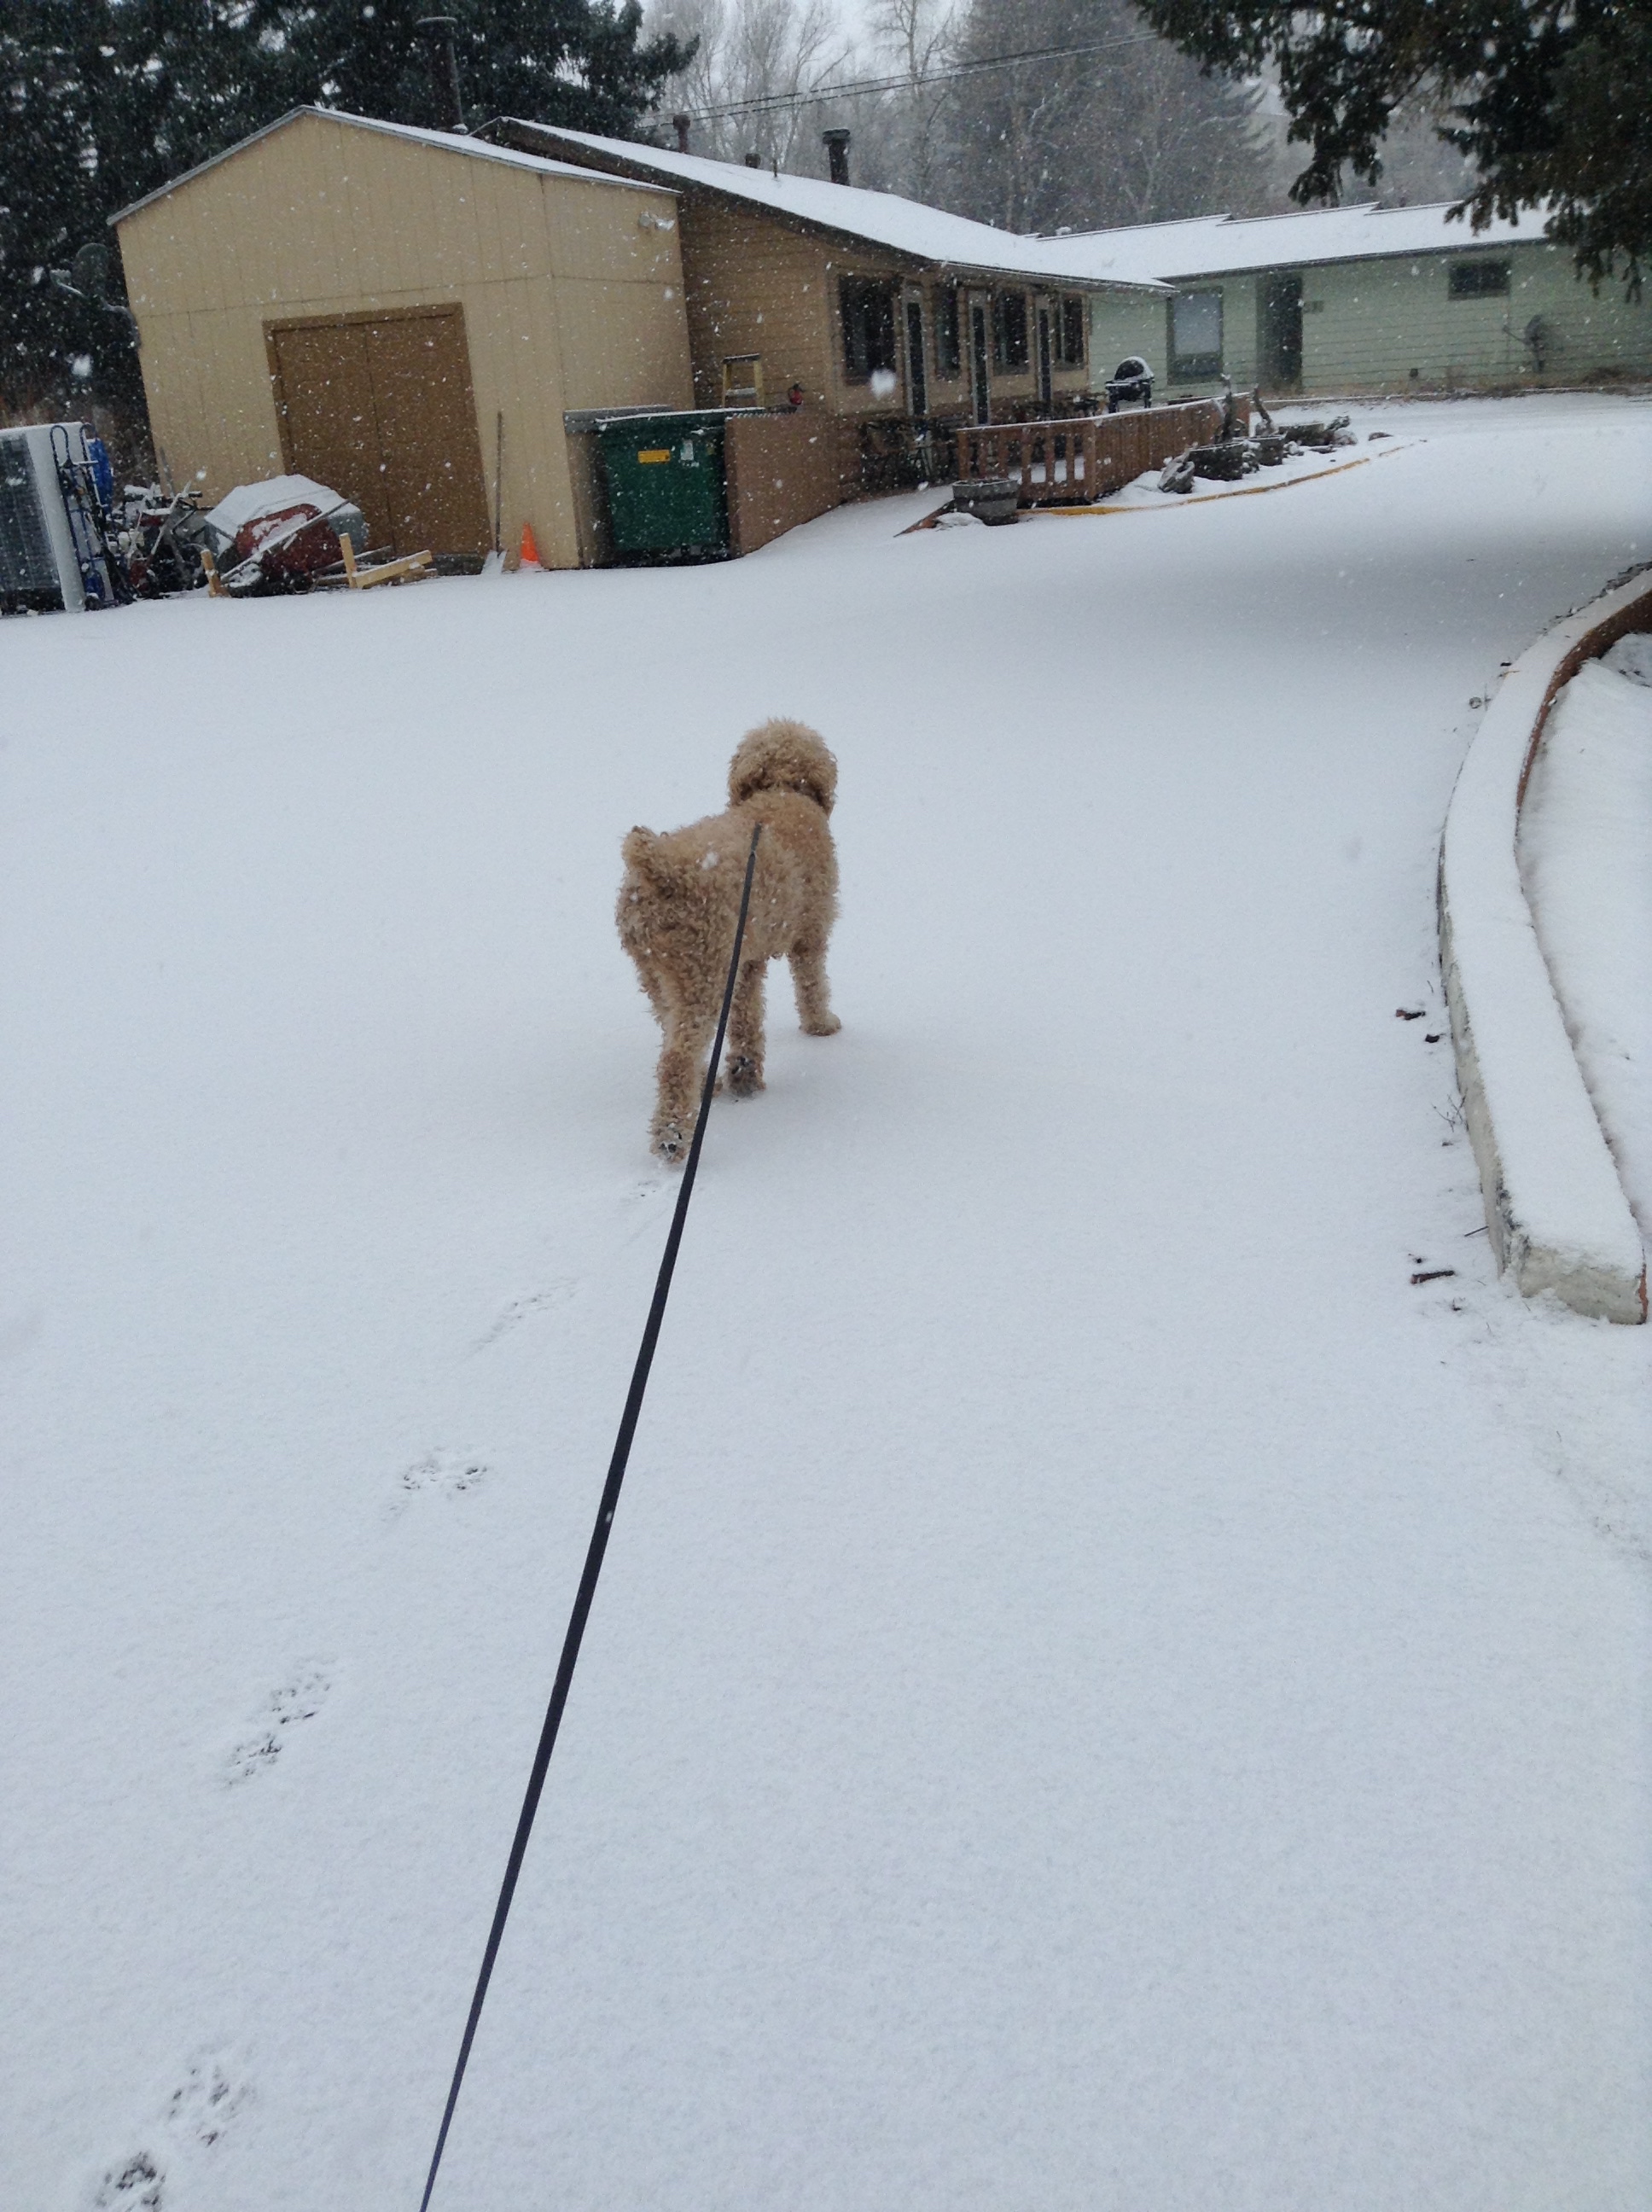 Snowy walk